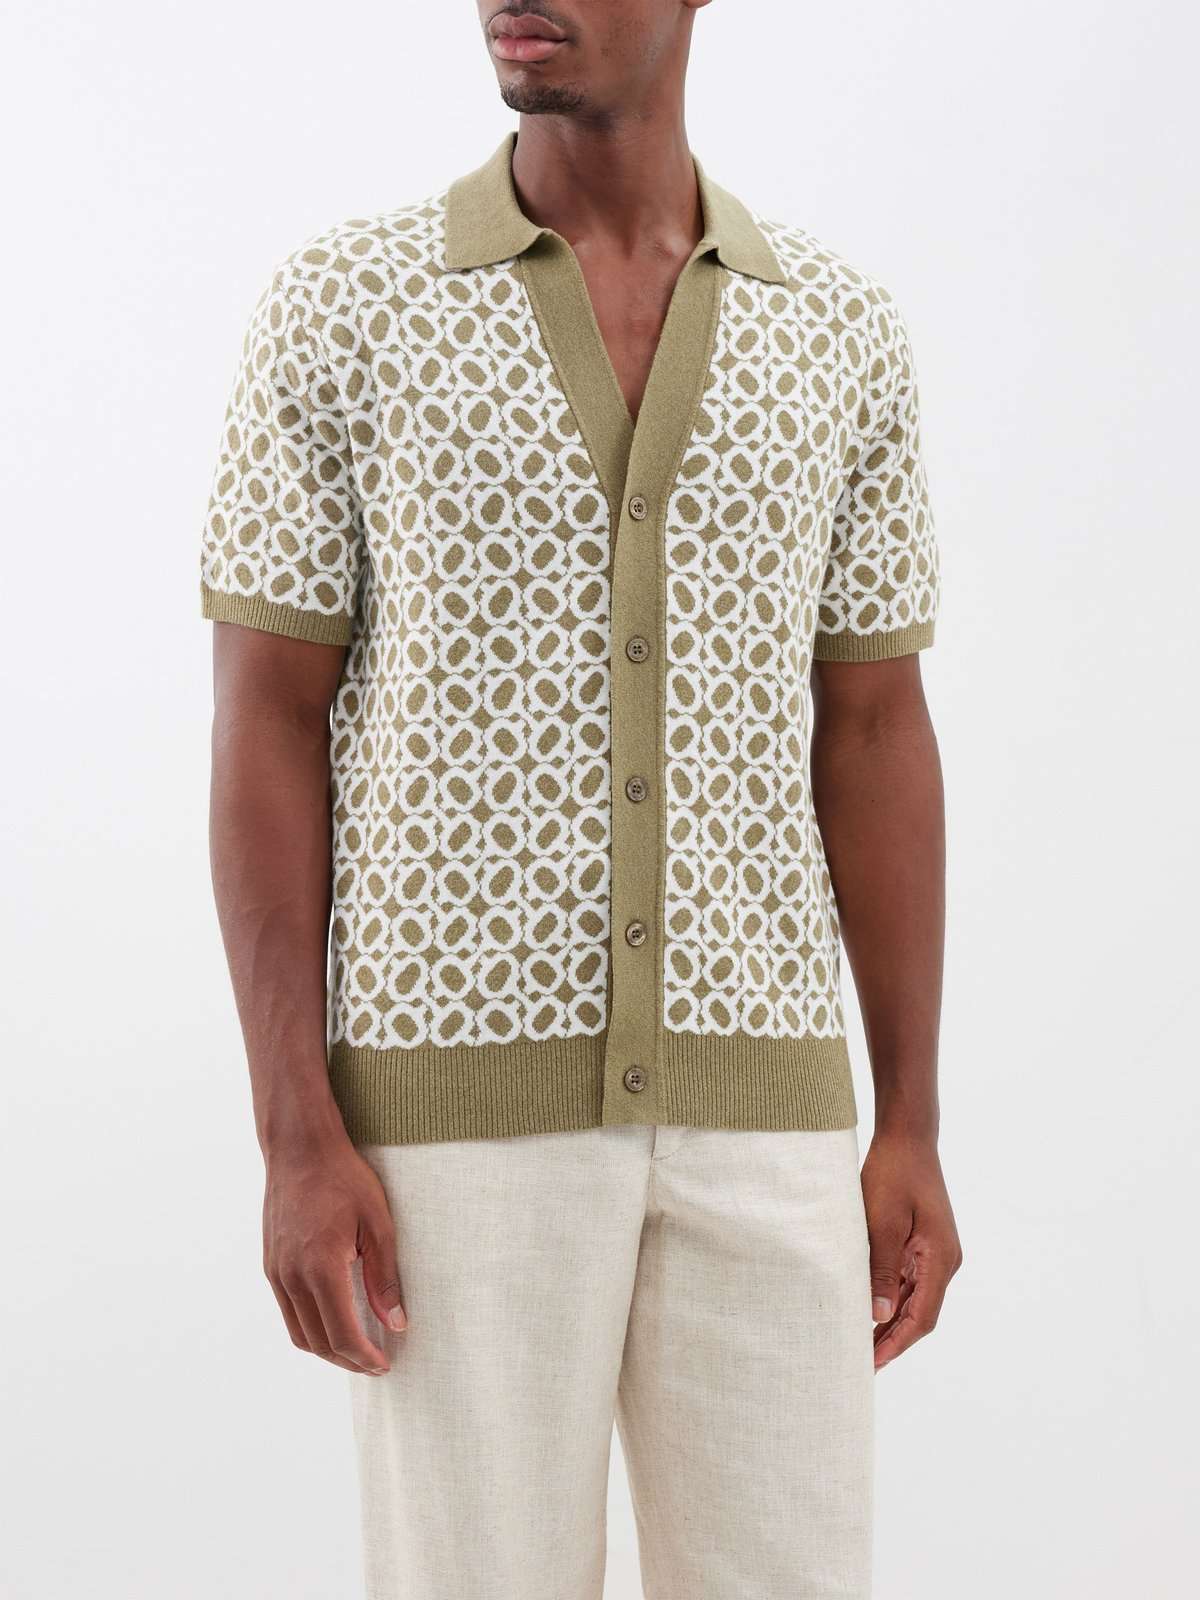 Рубашка-поло жаккардовой вязки Romero Ipanema из хлопка